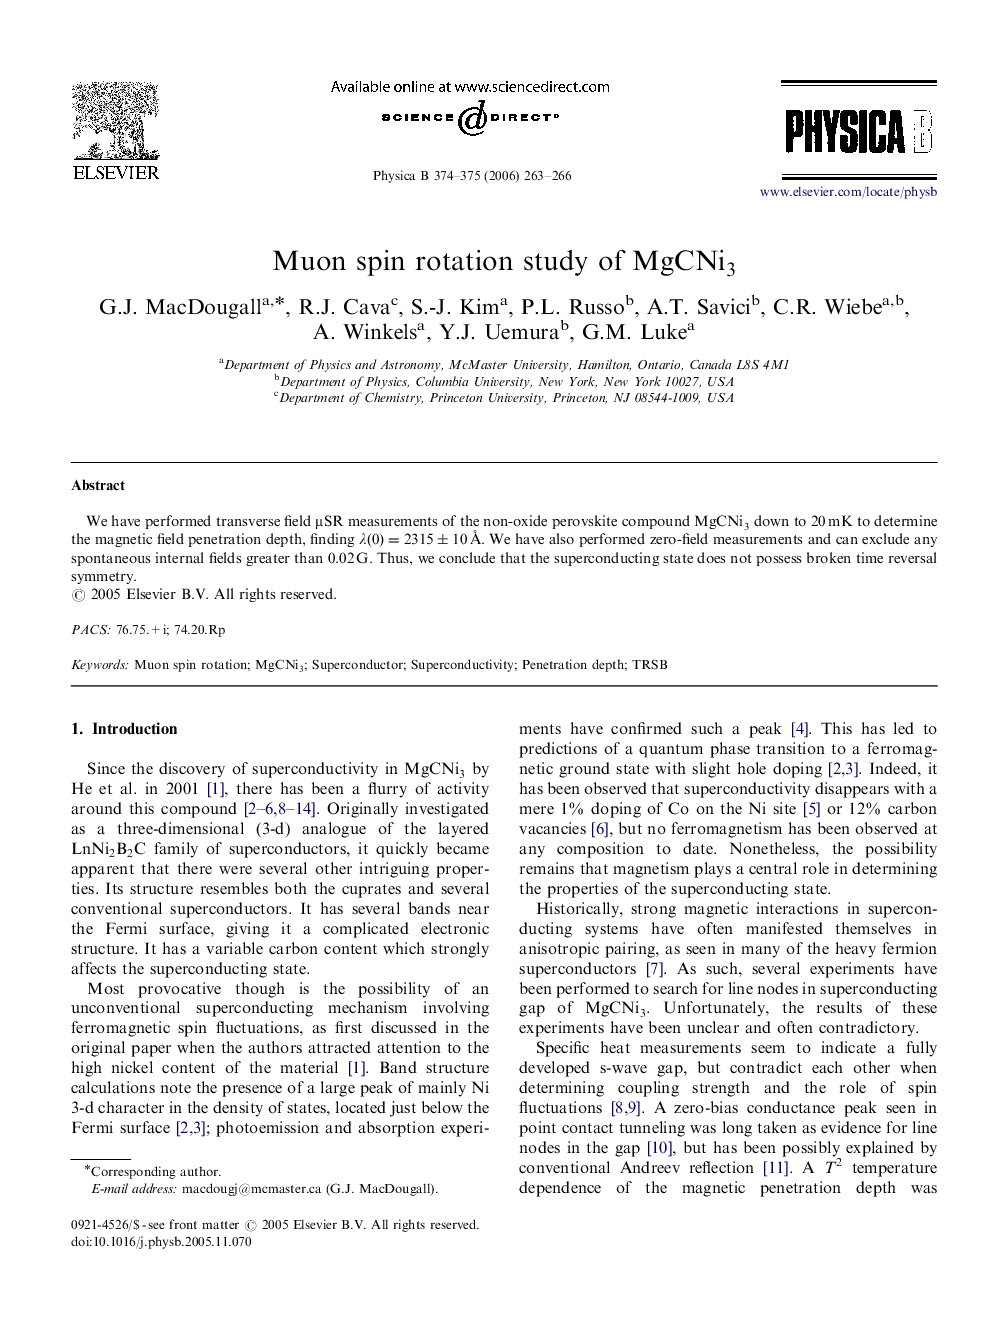 Muon spin rotation study of MgCNi3MgCNi3